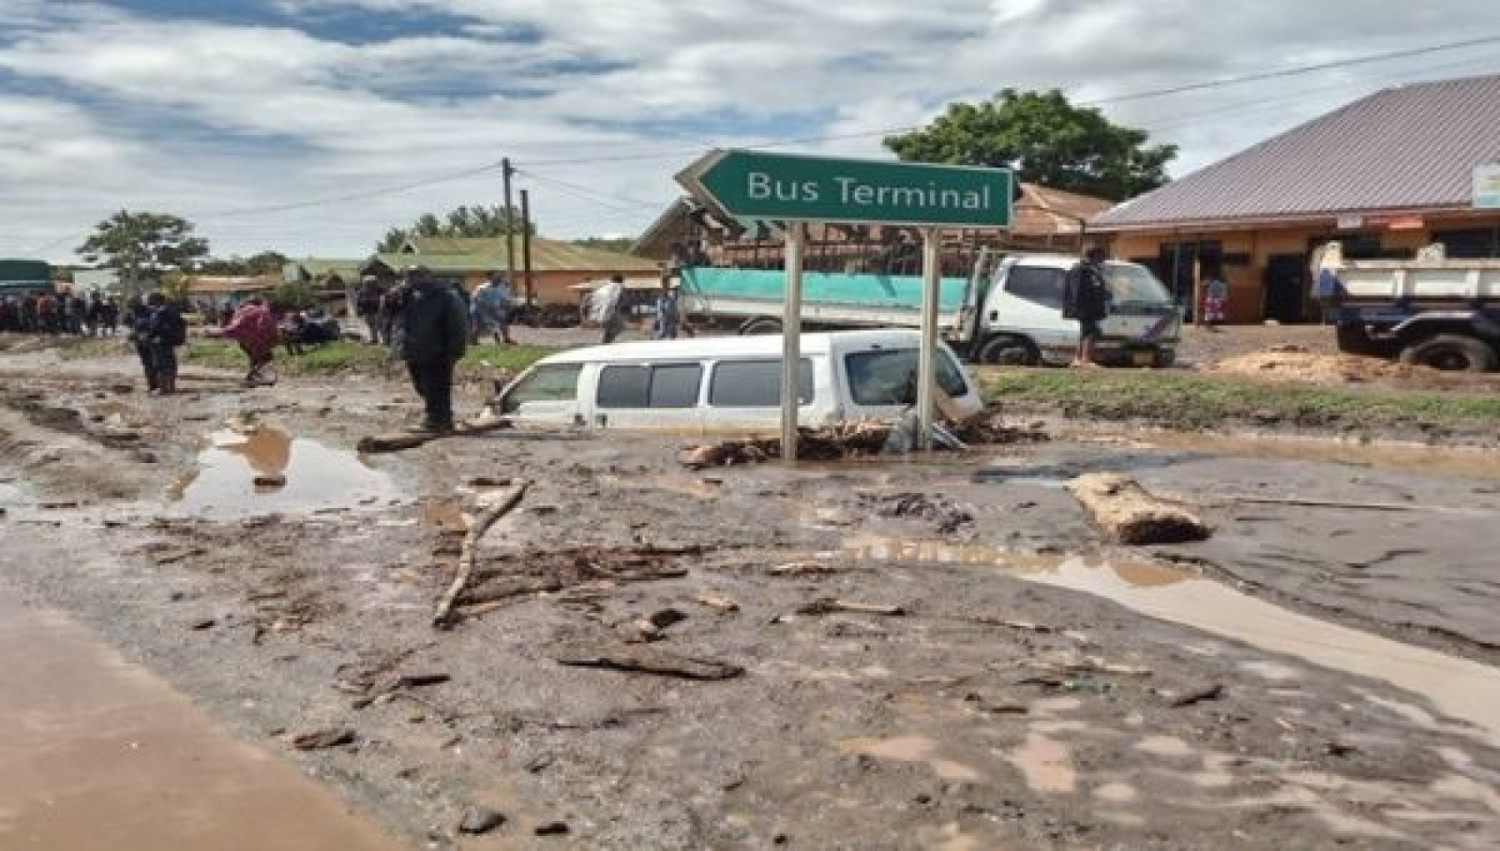 Tanzanie - Le bilan des glissements de terrain monte à 68 morts